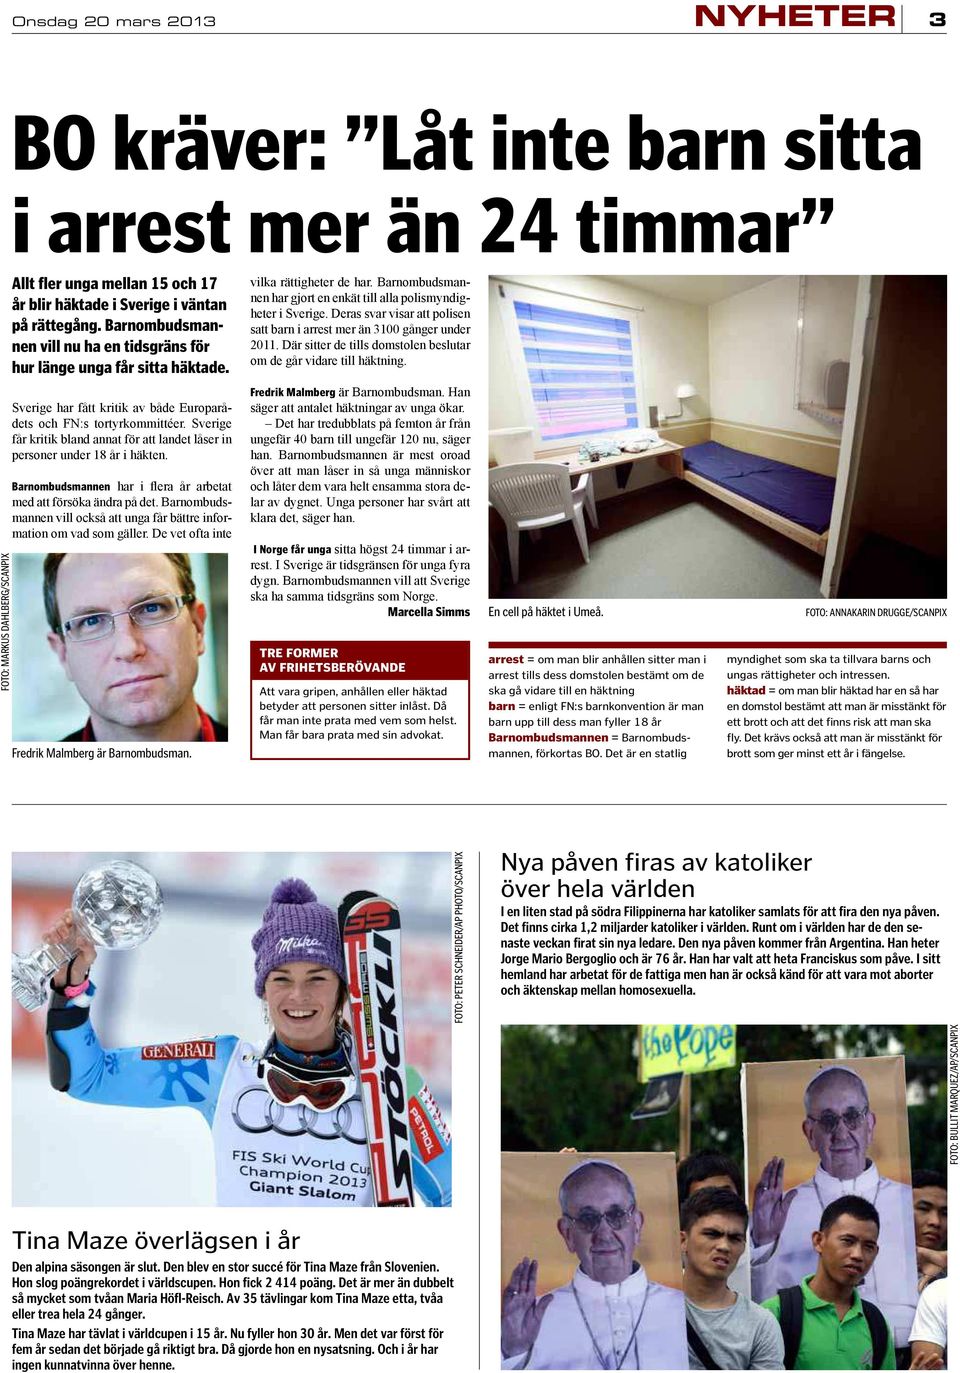 Fredrik Malmberg I Norge får unga Marcella Simms TRE FORMER AV FRIHETSBERÖVANDE Att vara gripen, anhållen eller häktad betyder att personen sitter inlåst. Då får man inte prata med vem som helst.